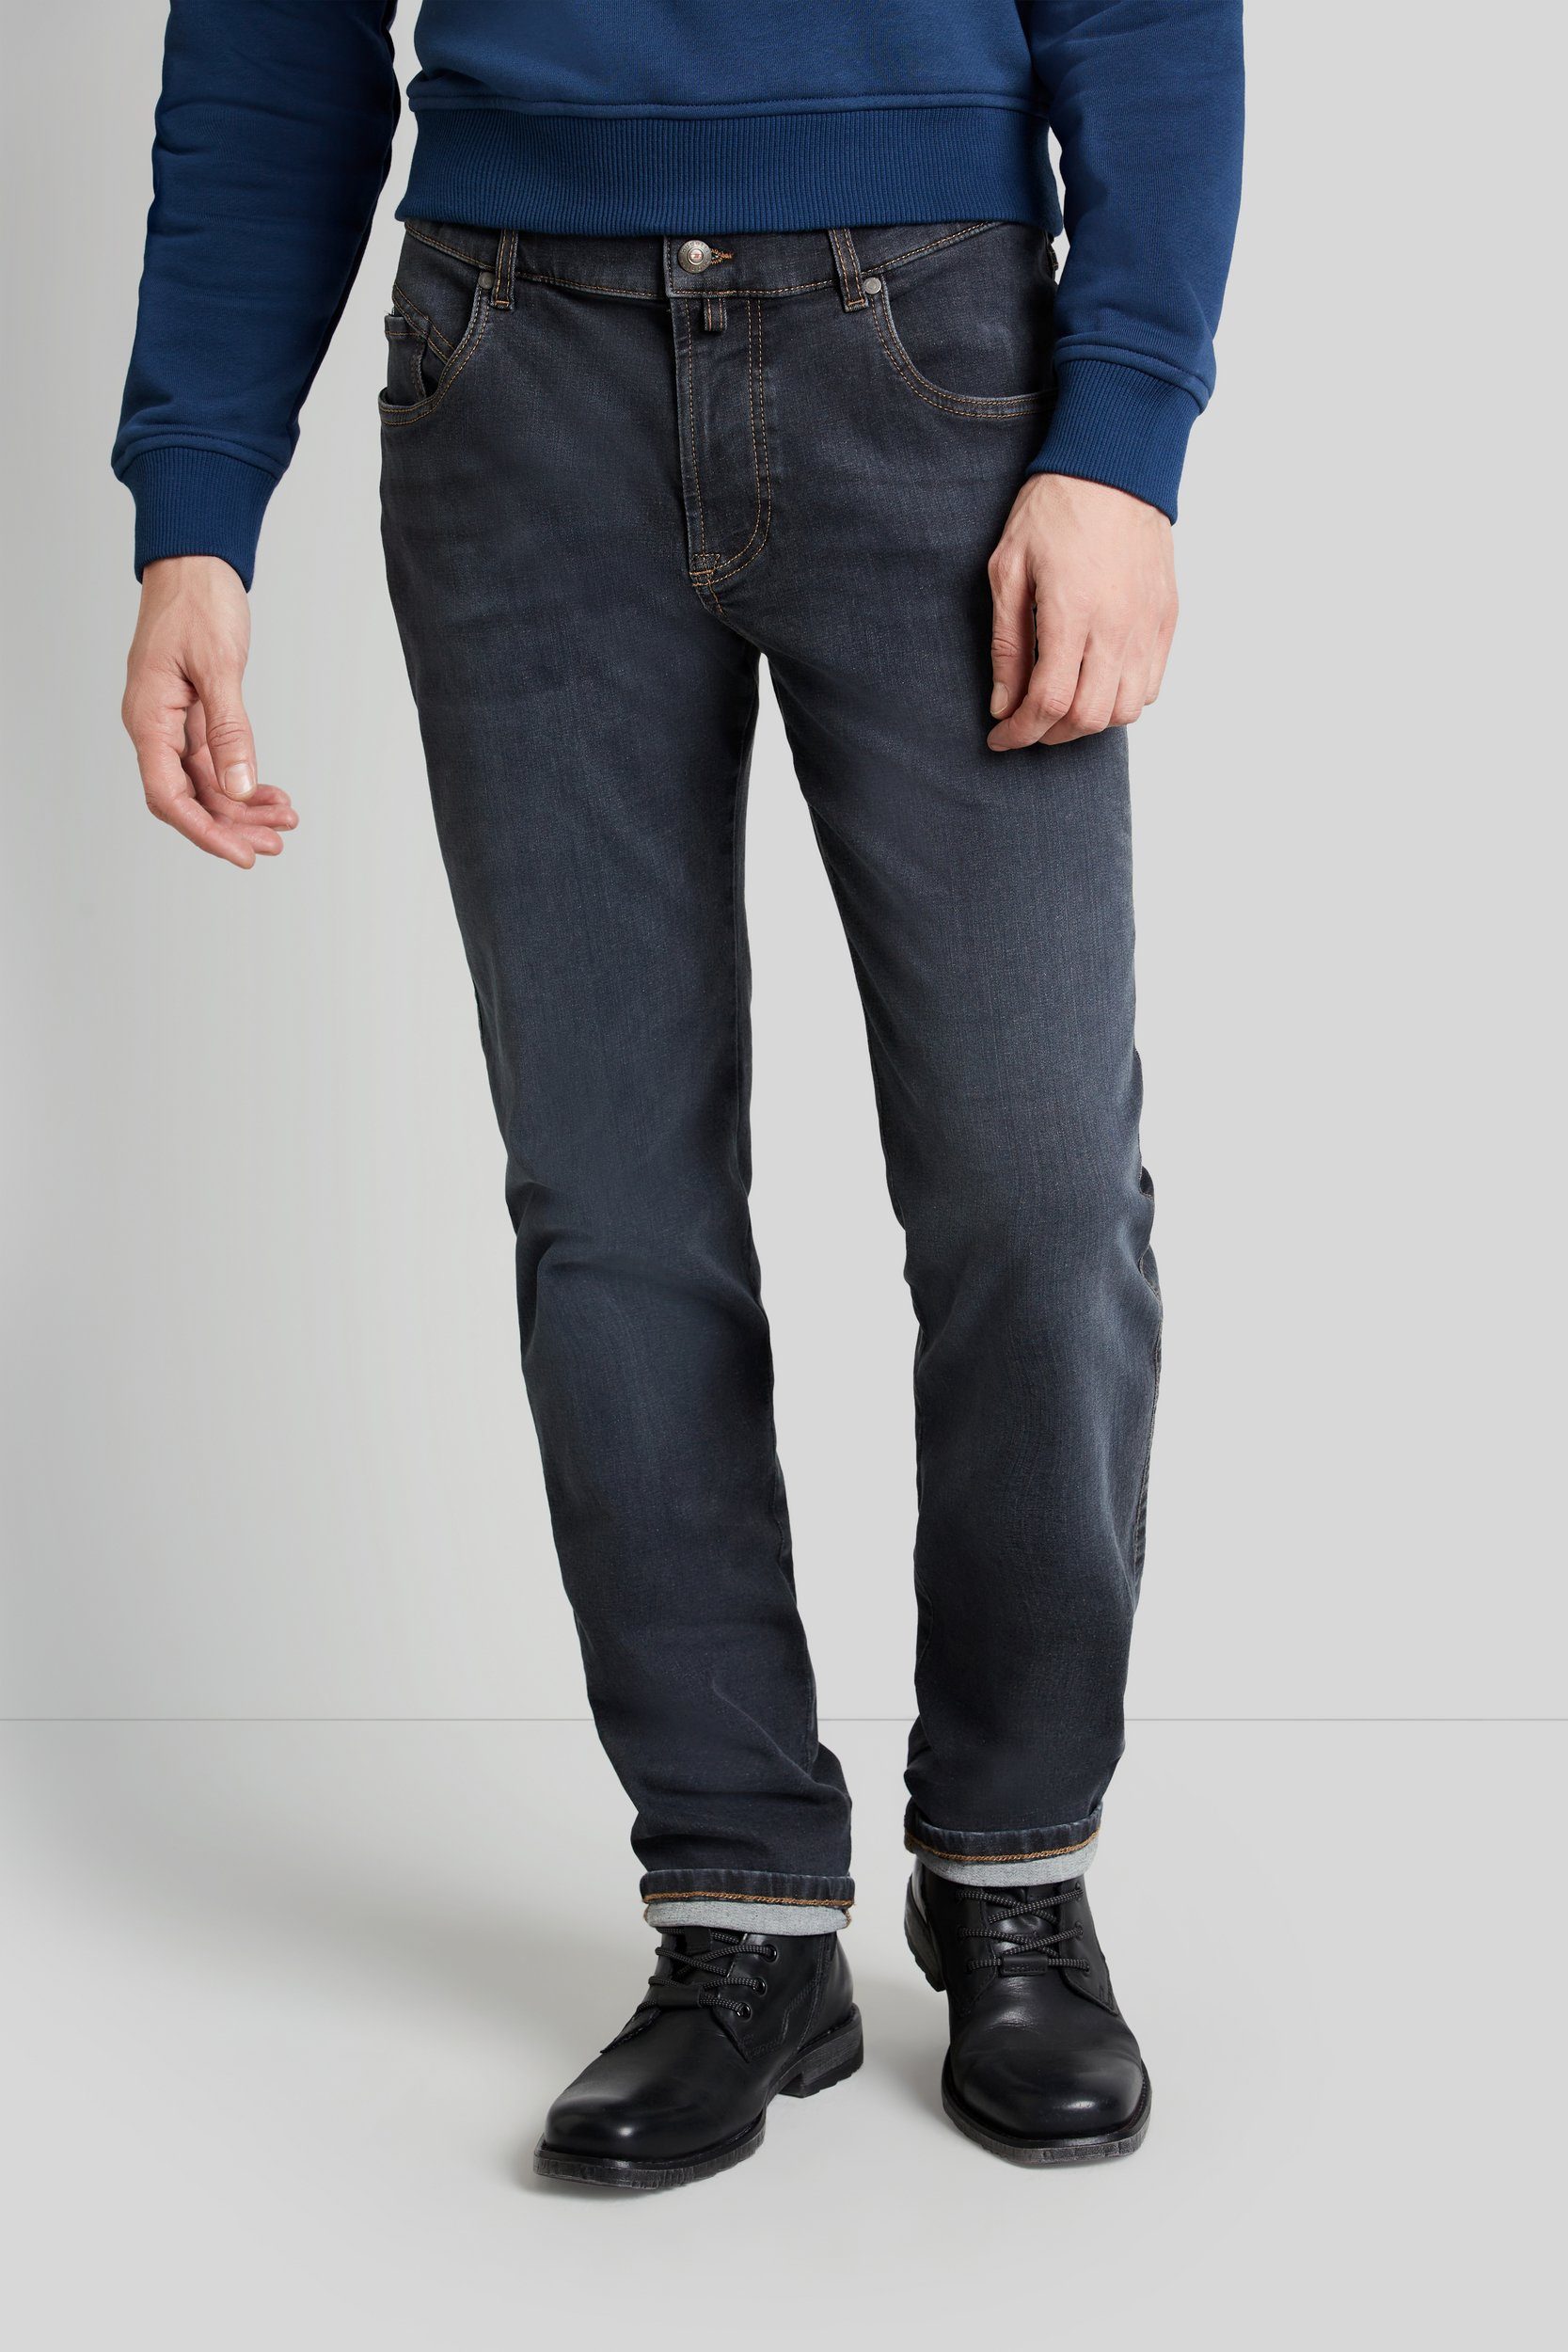 bugatti 5-Pocket-Jeans Flexcity Denim mit marine hohem Tragekomfort